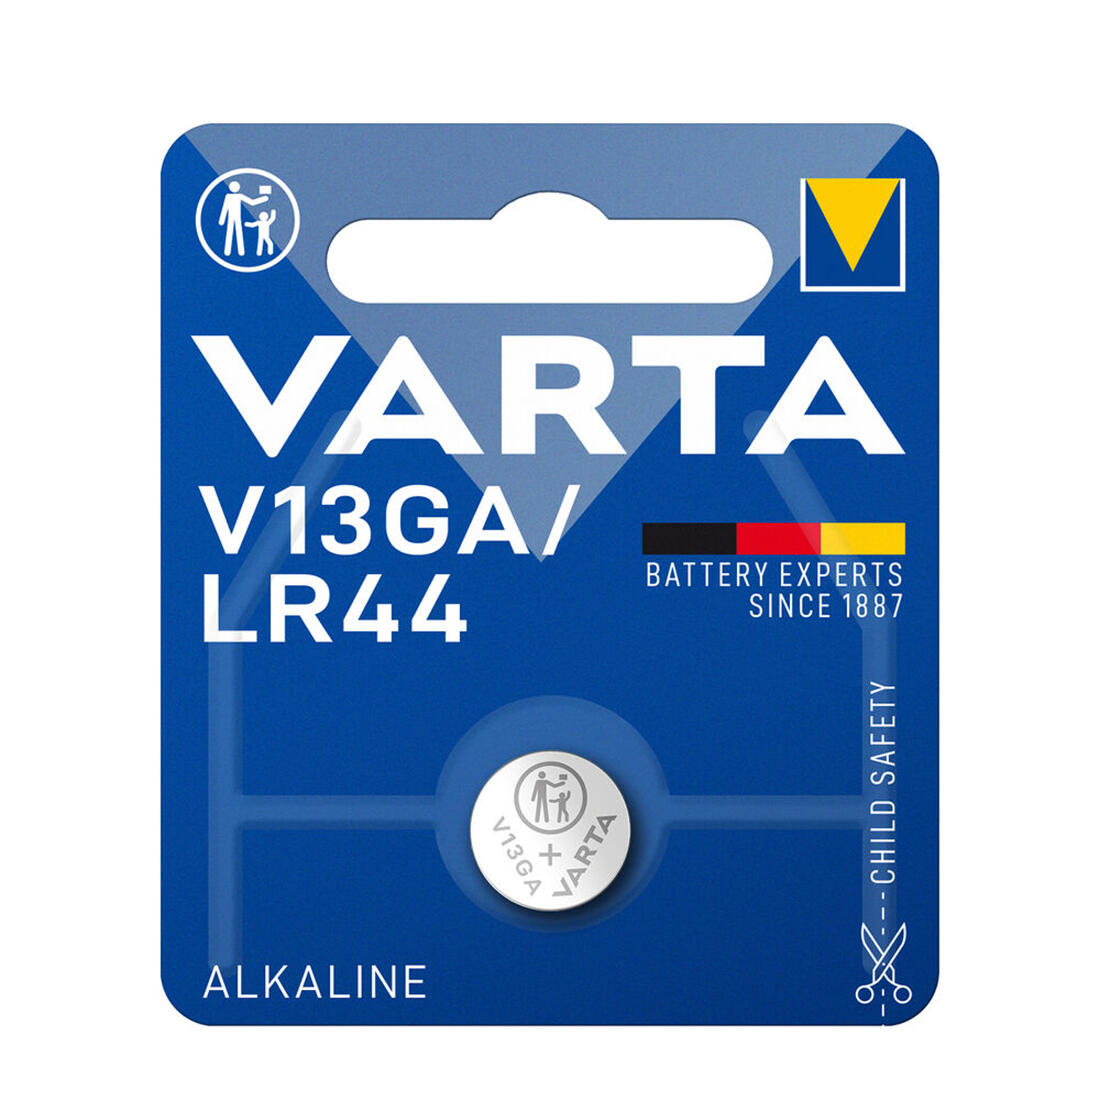 baterie knoflíková V13GA/LR44 alkalická VARTA 0.01 Kg MAXMIX Sklad14 129174 86